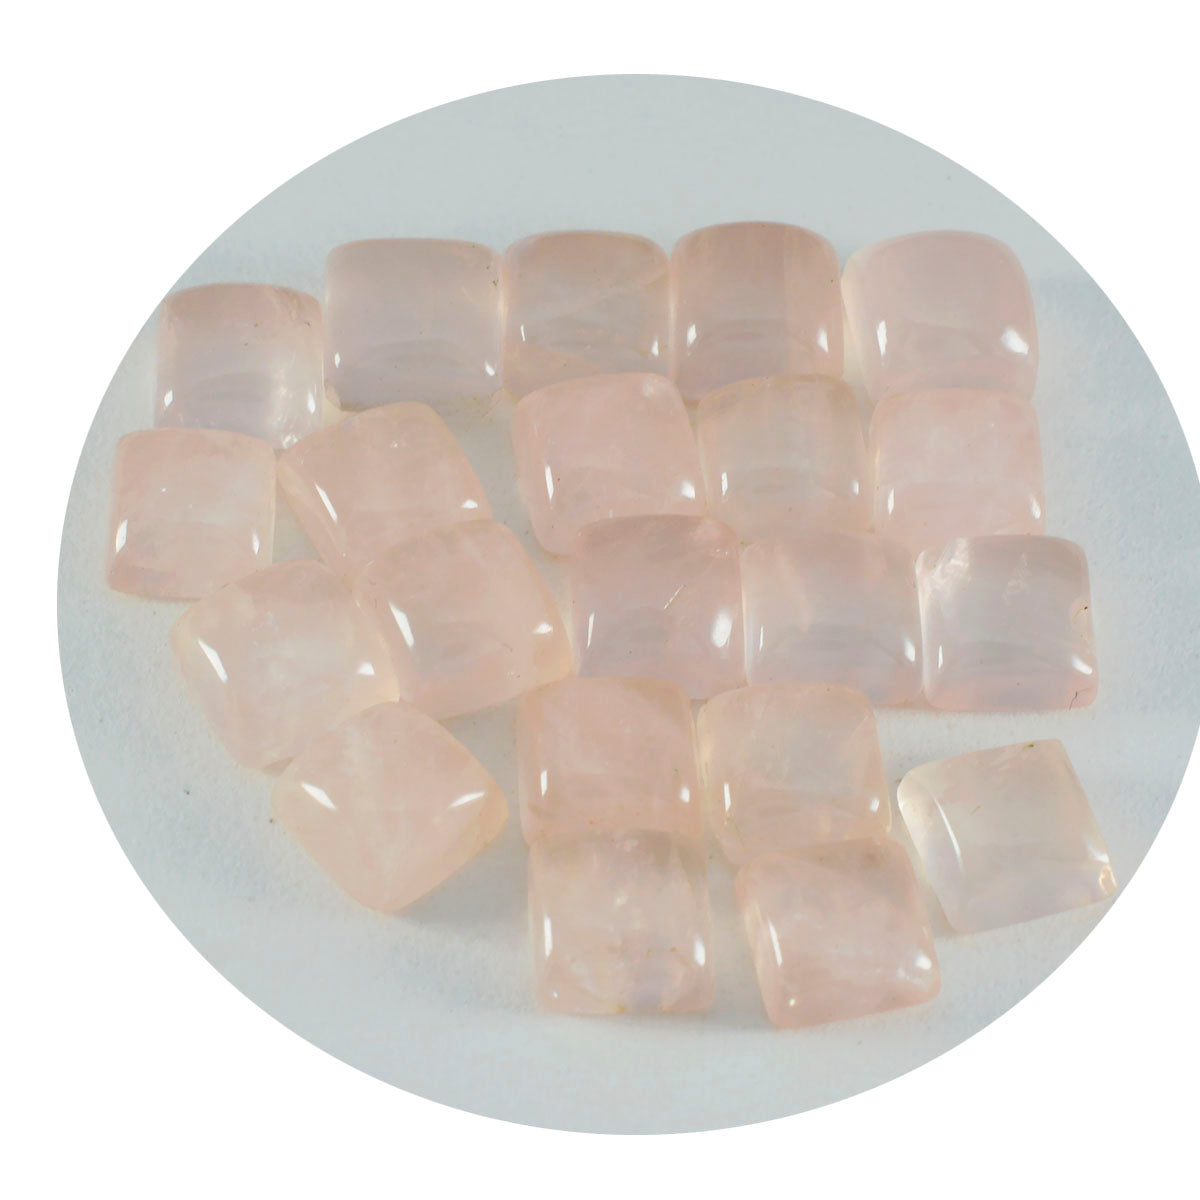 riyogems 1 шт. кабошон из розового кварца 11x11 мм квадратной формы прекрасного качества, свободный камень